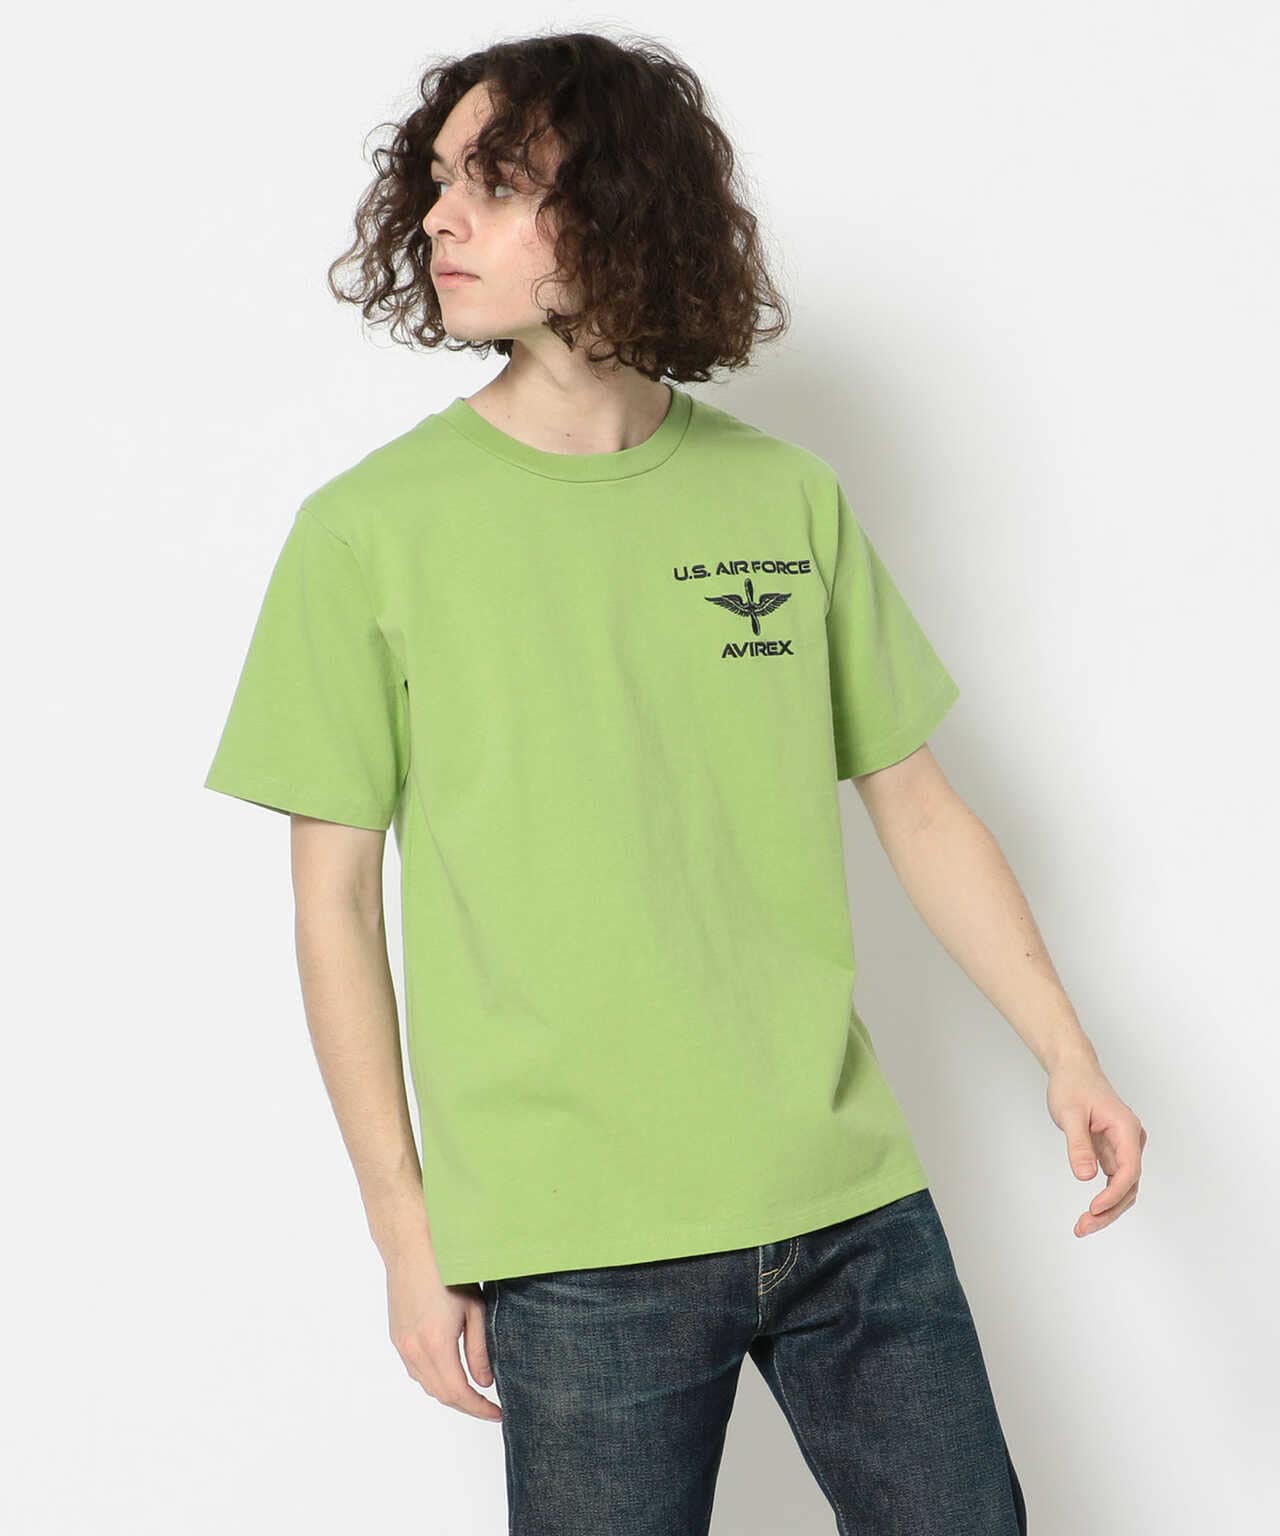 刺繍Tシャツ カデットウィング/S/S EMB TEE CADET WING